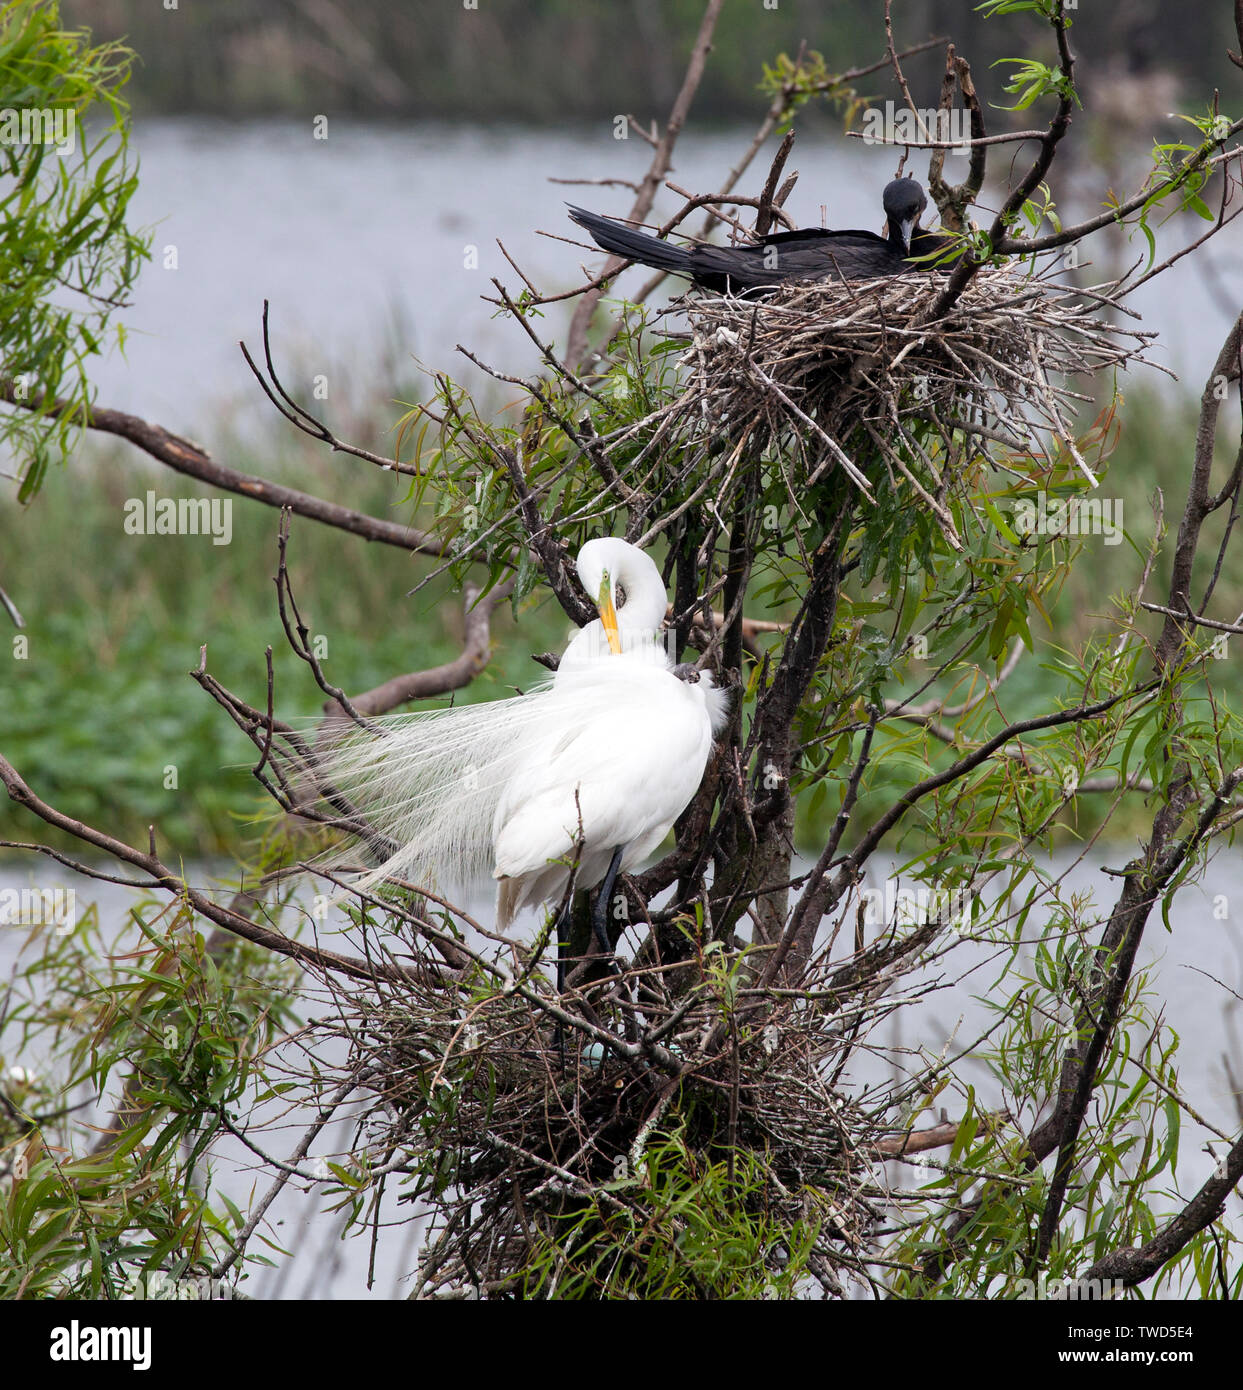 Grande Aigrette (Commun) dans son nid de toilettage au Smith Oaks Bird Sanctuary Rookery, île haute, au Texas. Banque D'Images